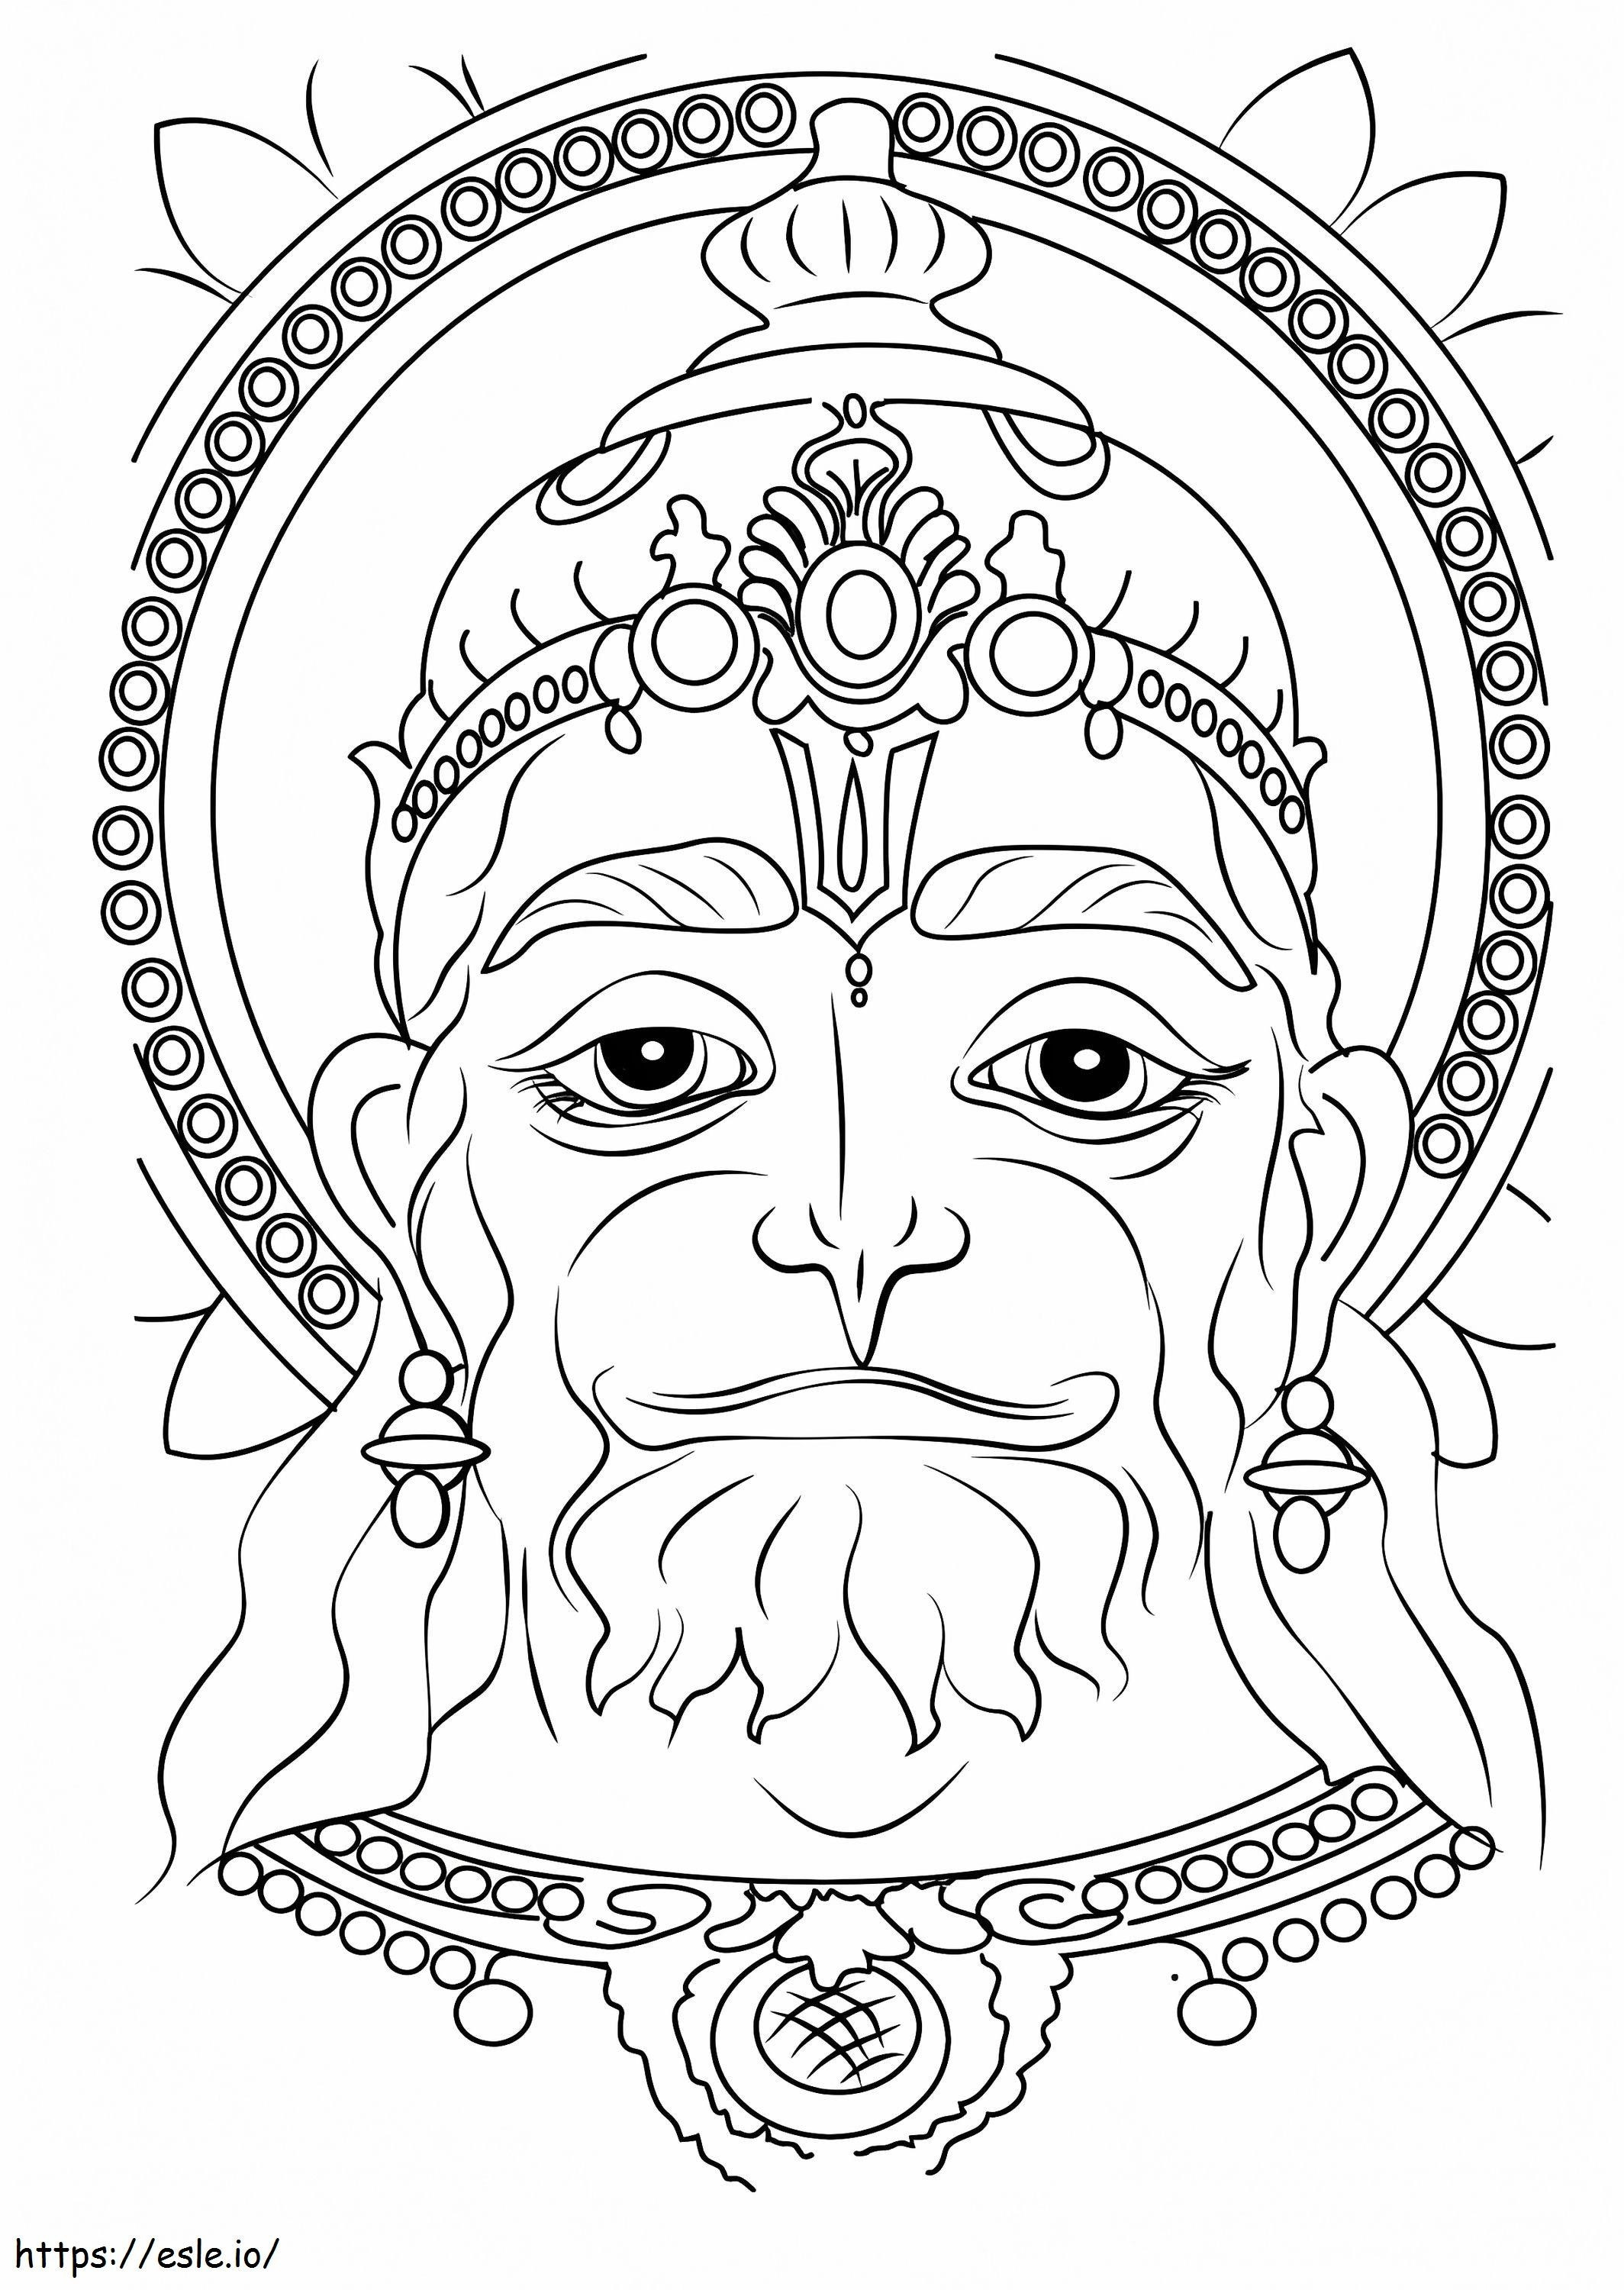 Hanuman Face coloring page